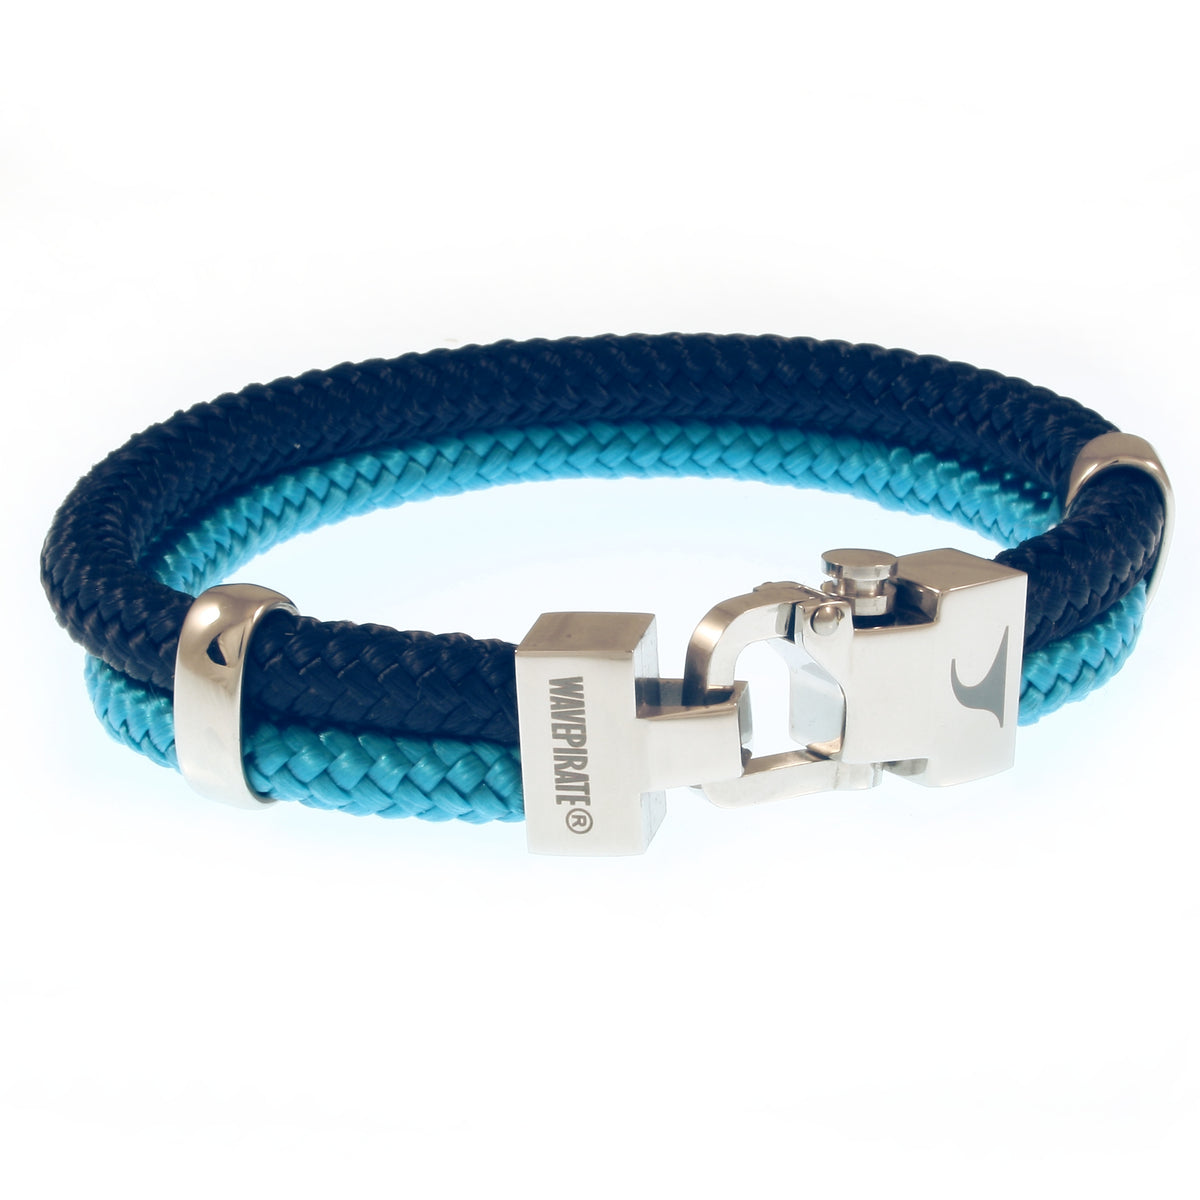 Herren-Segeltau-Armband-Turn-nachtblau-blau-geflochten-Edelstahlverschluss-vorn-wavepirate-shop-st